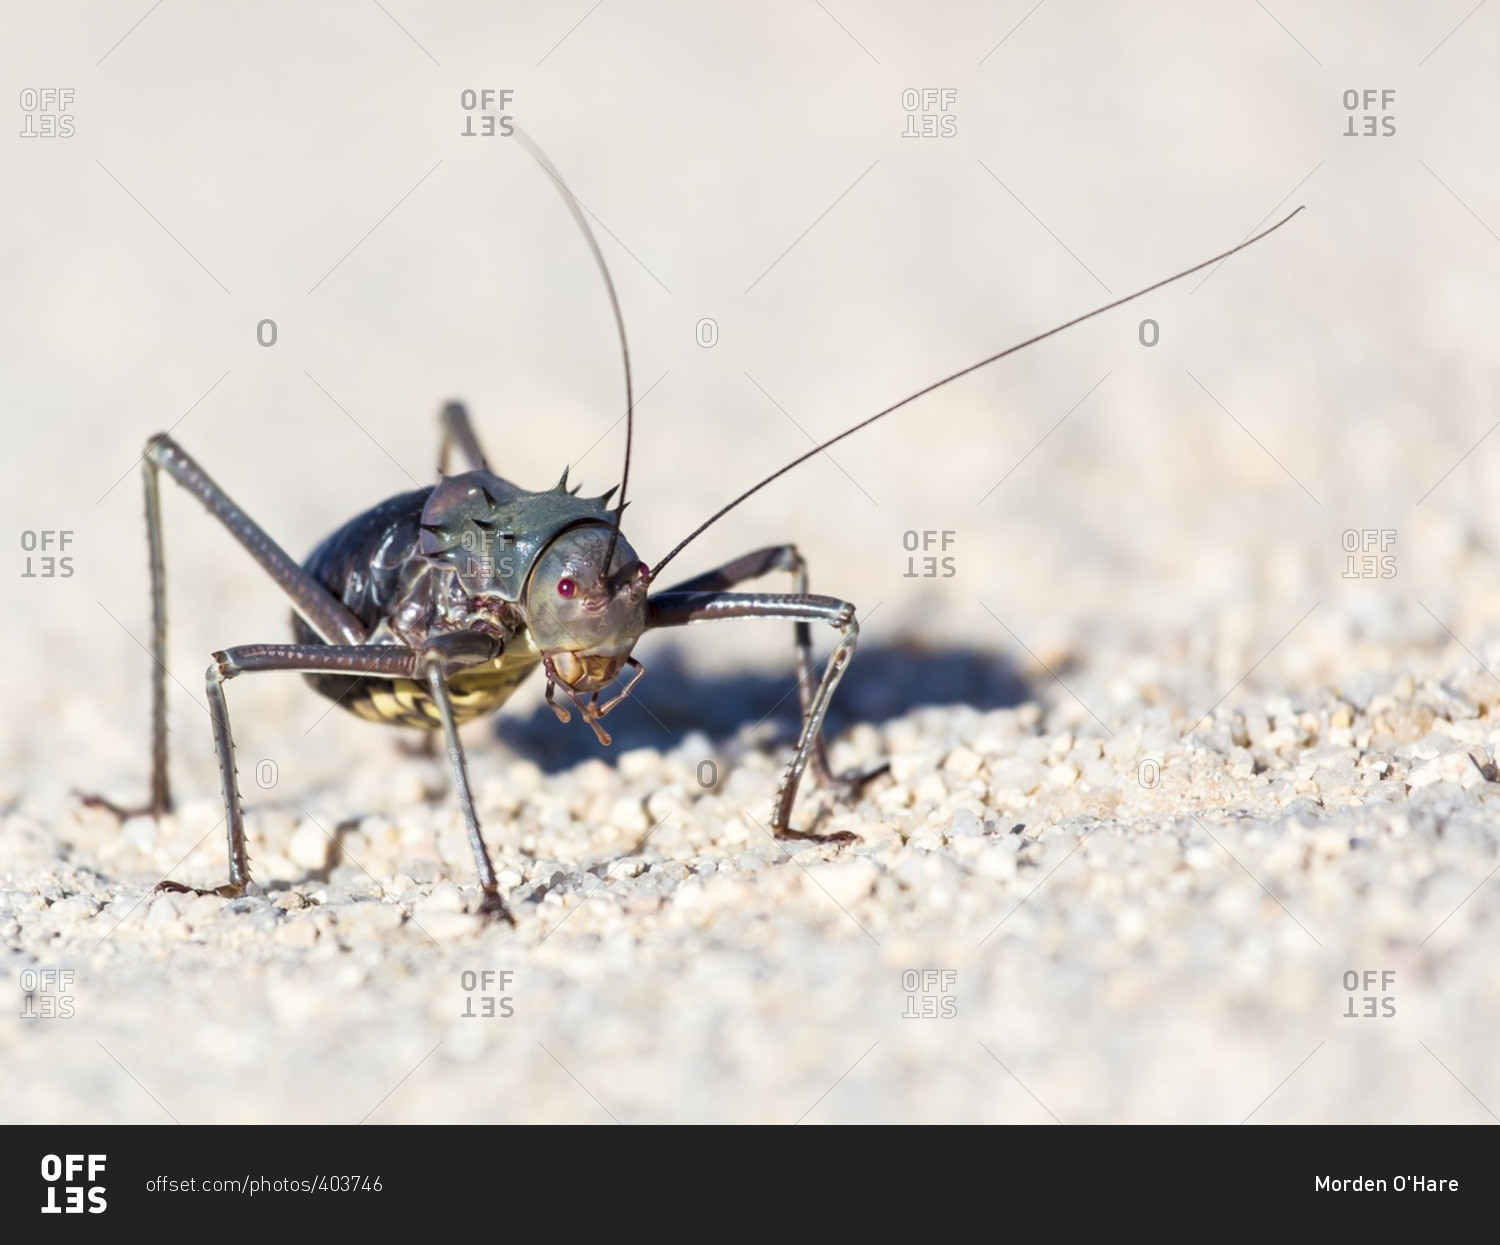 Close-up of a spiny bush cricket